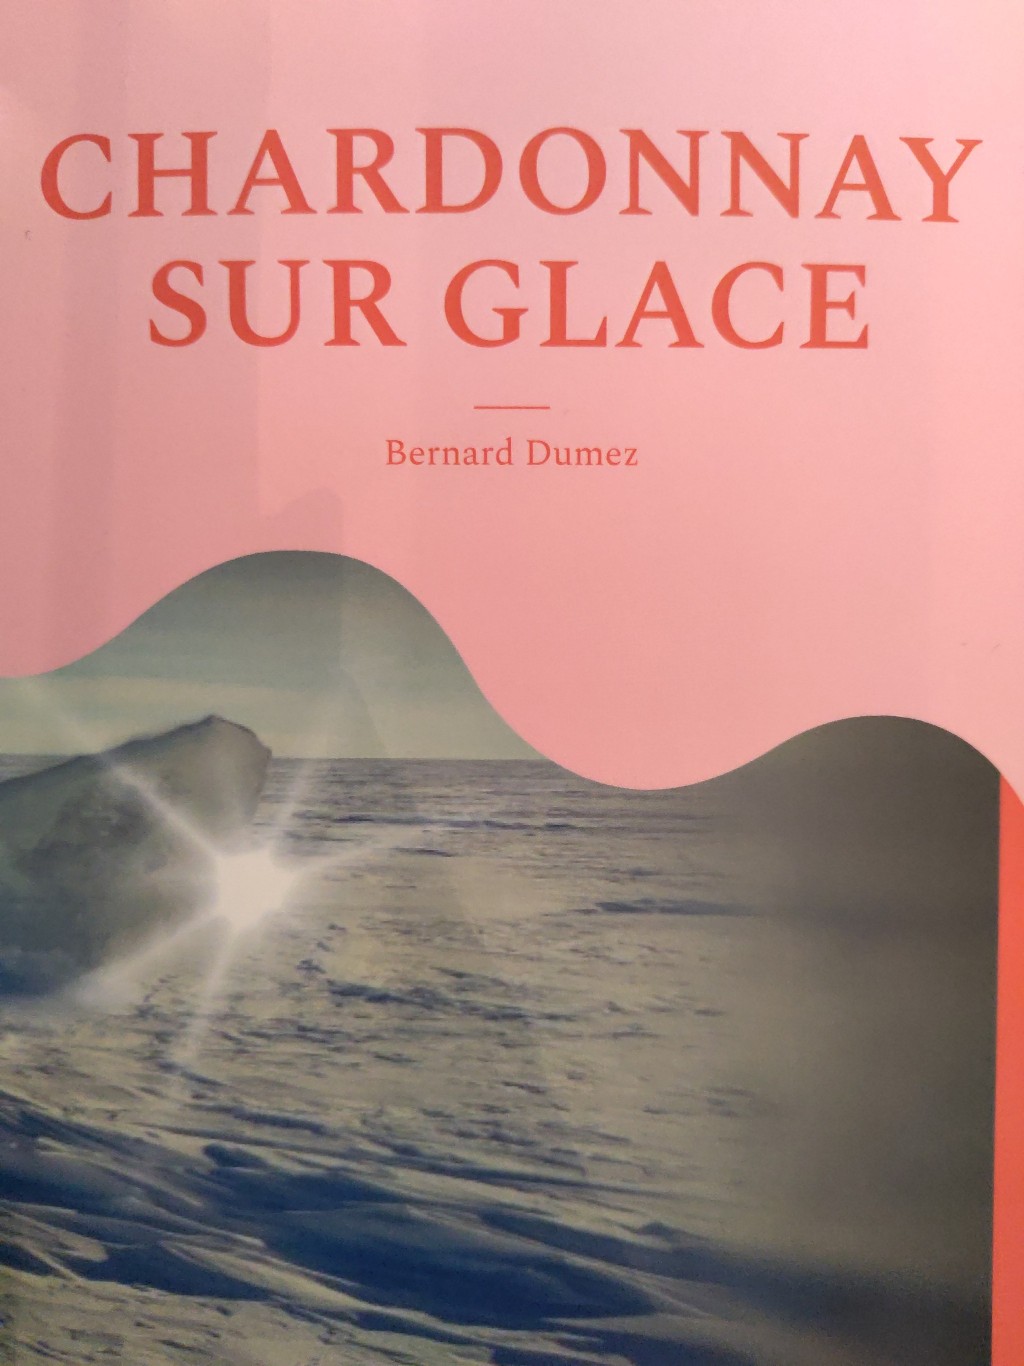 Bernard Dumez: Chardonnay sur glace (Hardcover, Français language, BOD - Book on Demand)